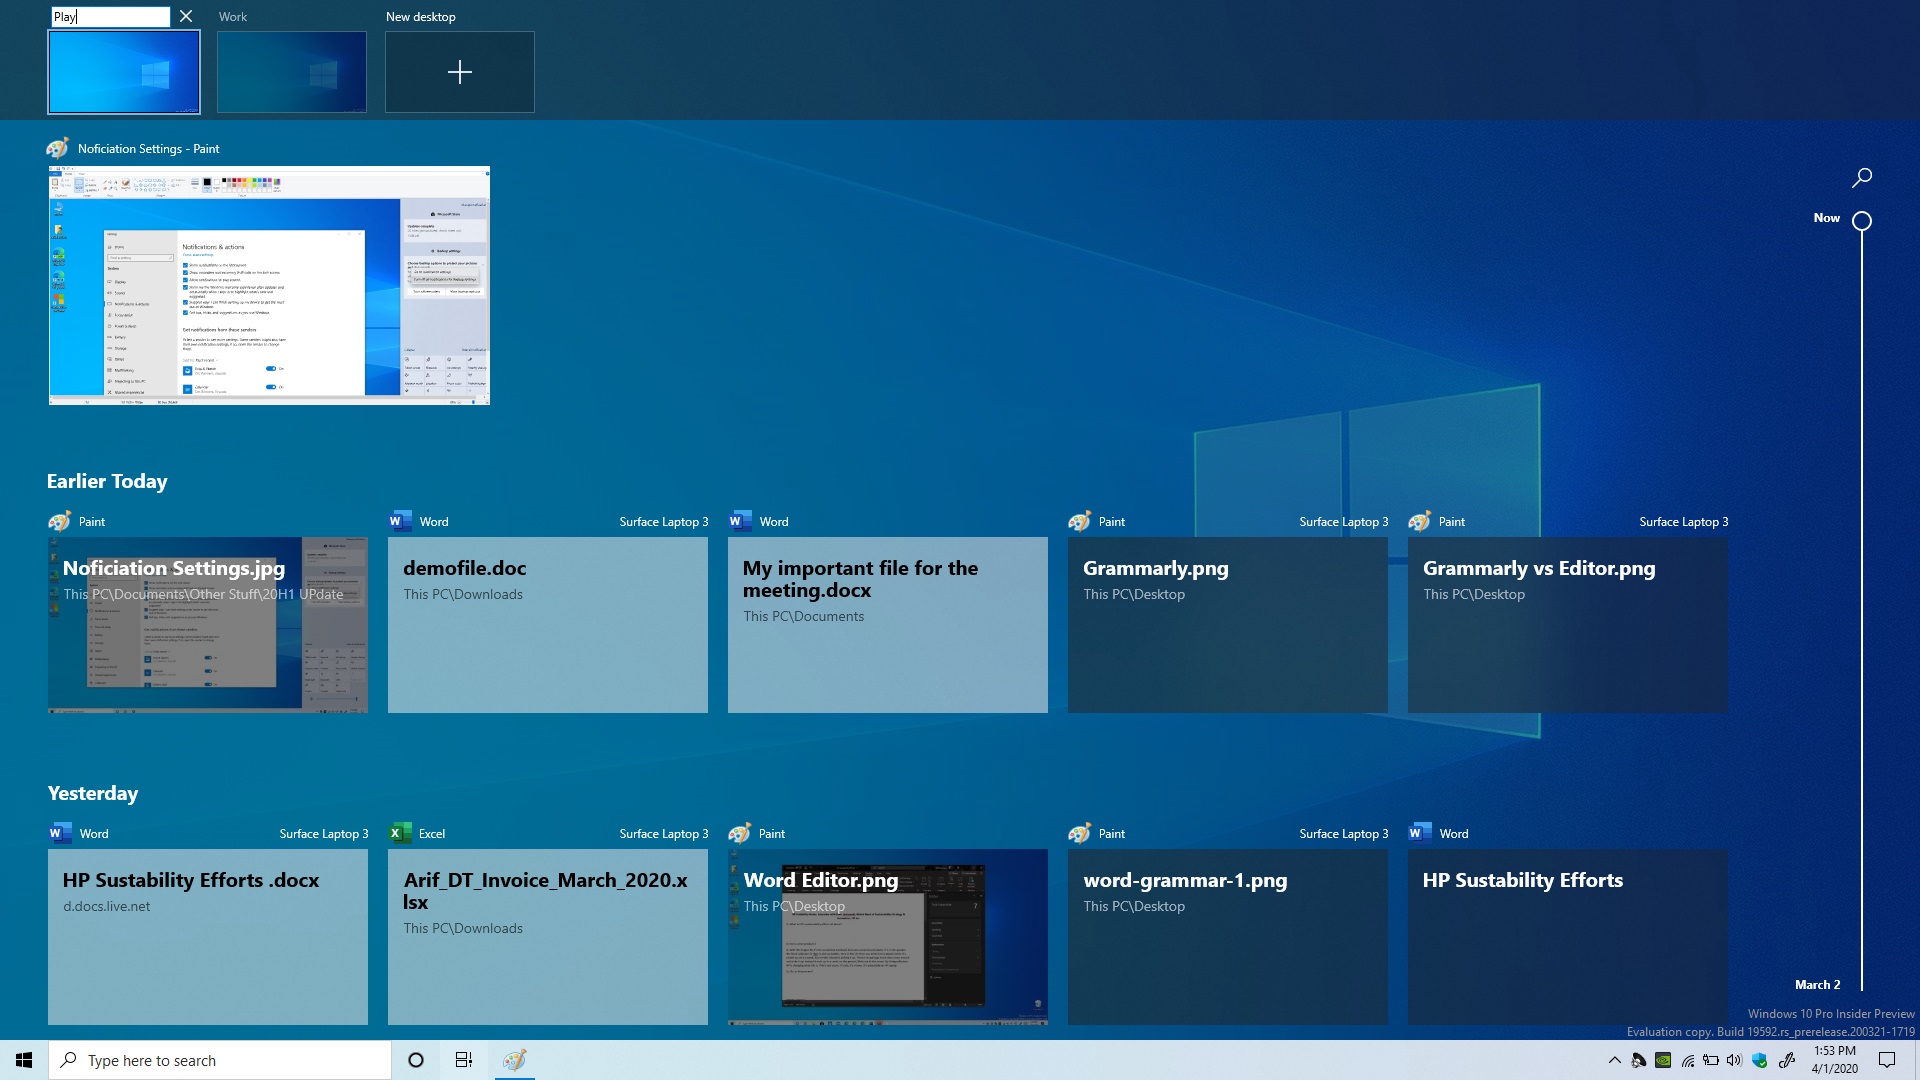 windows 10 may 2020 update review 20h1 rename virtual desktops